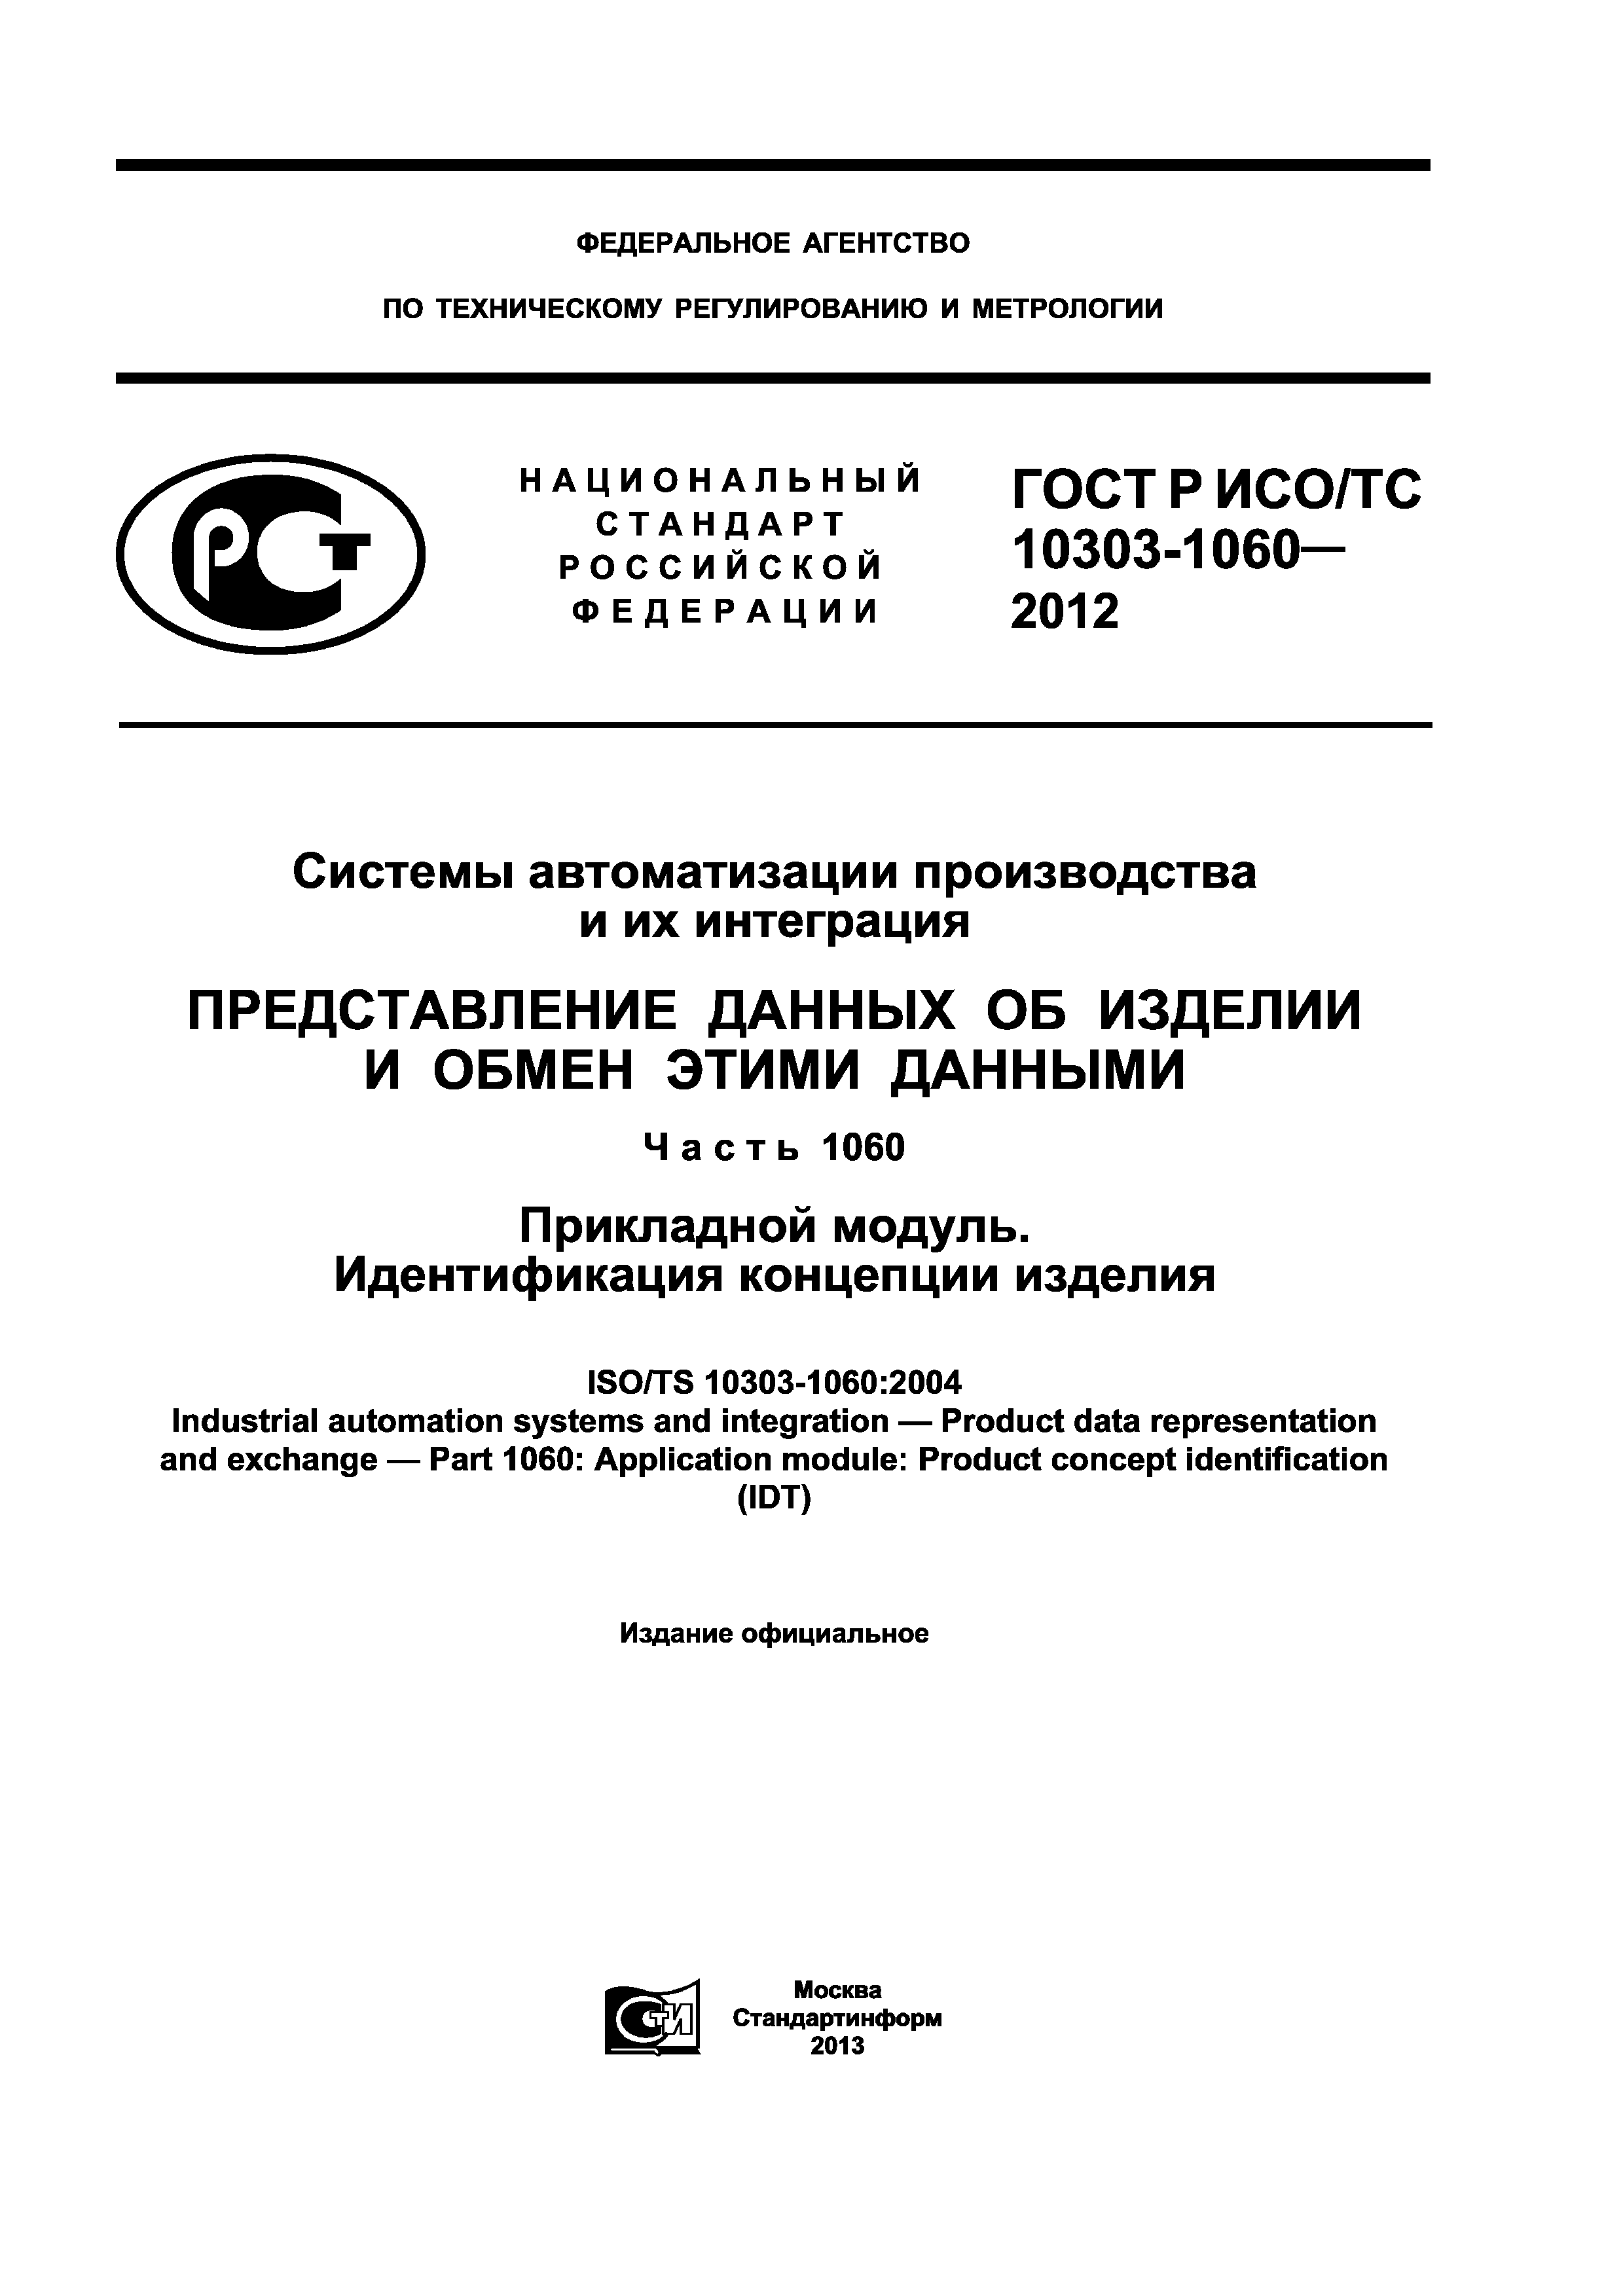 ГОСТ Р ИСО/ТС 10303-1060-2012